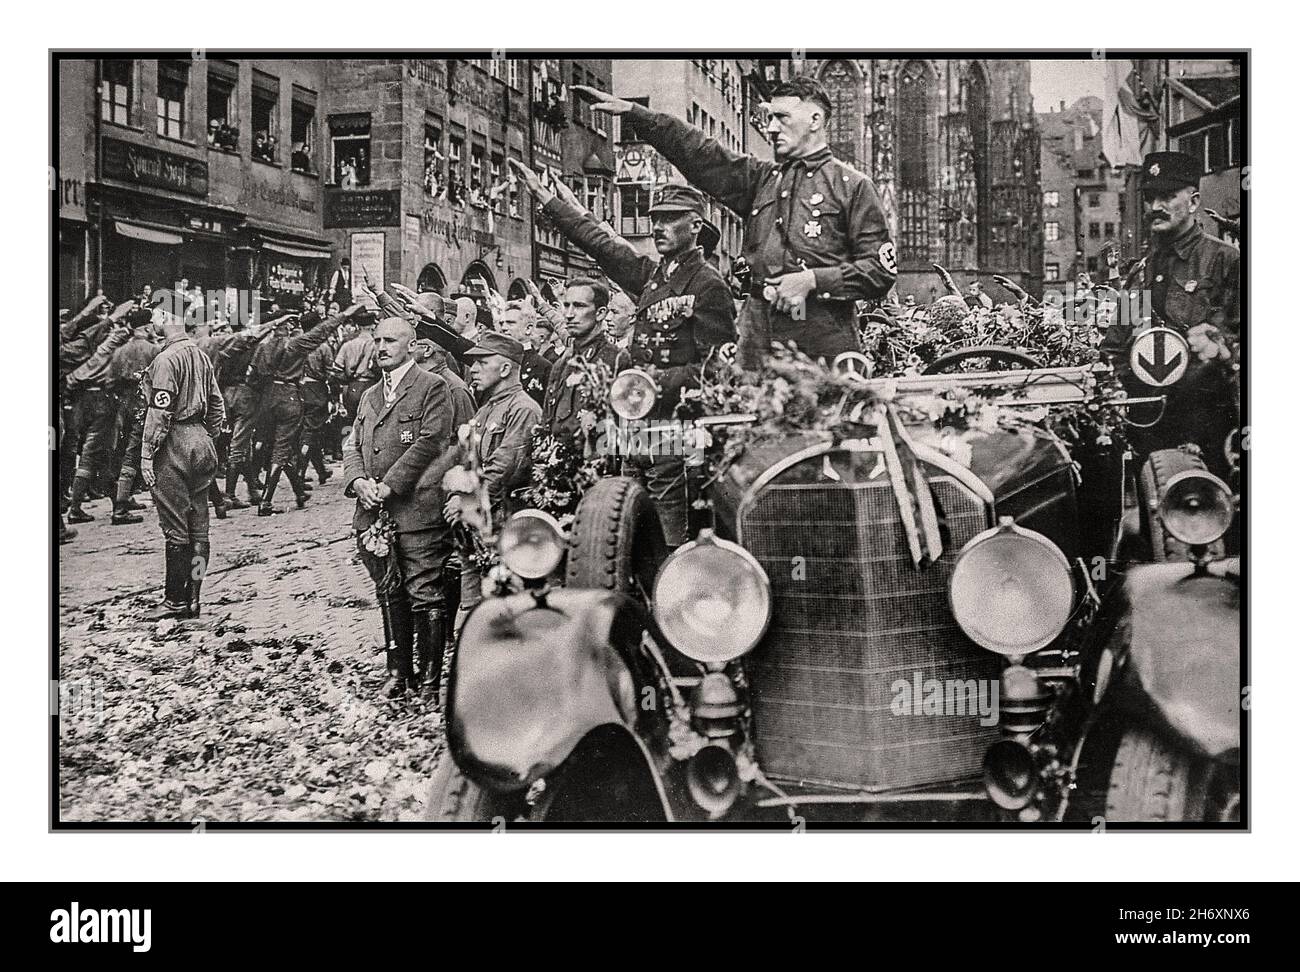 Adolf Hitler in SA-Uniform mit Hakenkreuz-Armband, in einer Blume stehend oben bedeckter Mercedes-Motorwagen begrüßt die SA-Truppen bei einer Nürnberger Nazi-Deutschland-Parade der 1930er Jahre Julius Streicher berüchtigte antisemitische Nazi-Soldaten stehen auch vor einer Gruppe vor Adolf Hitler Stockfoto